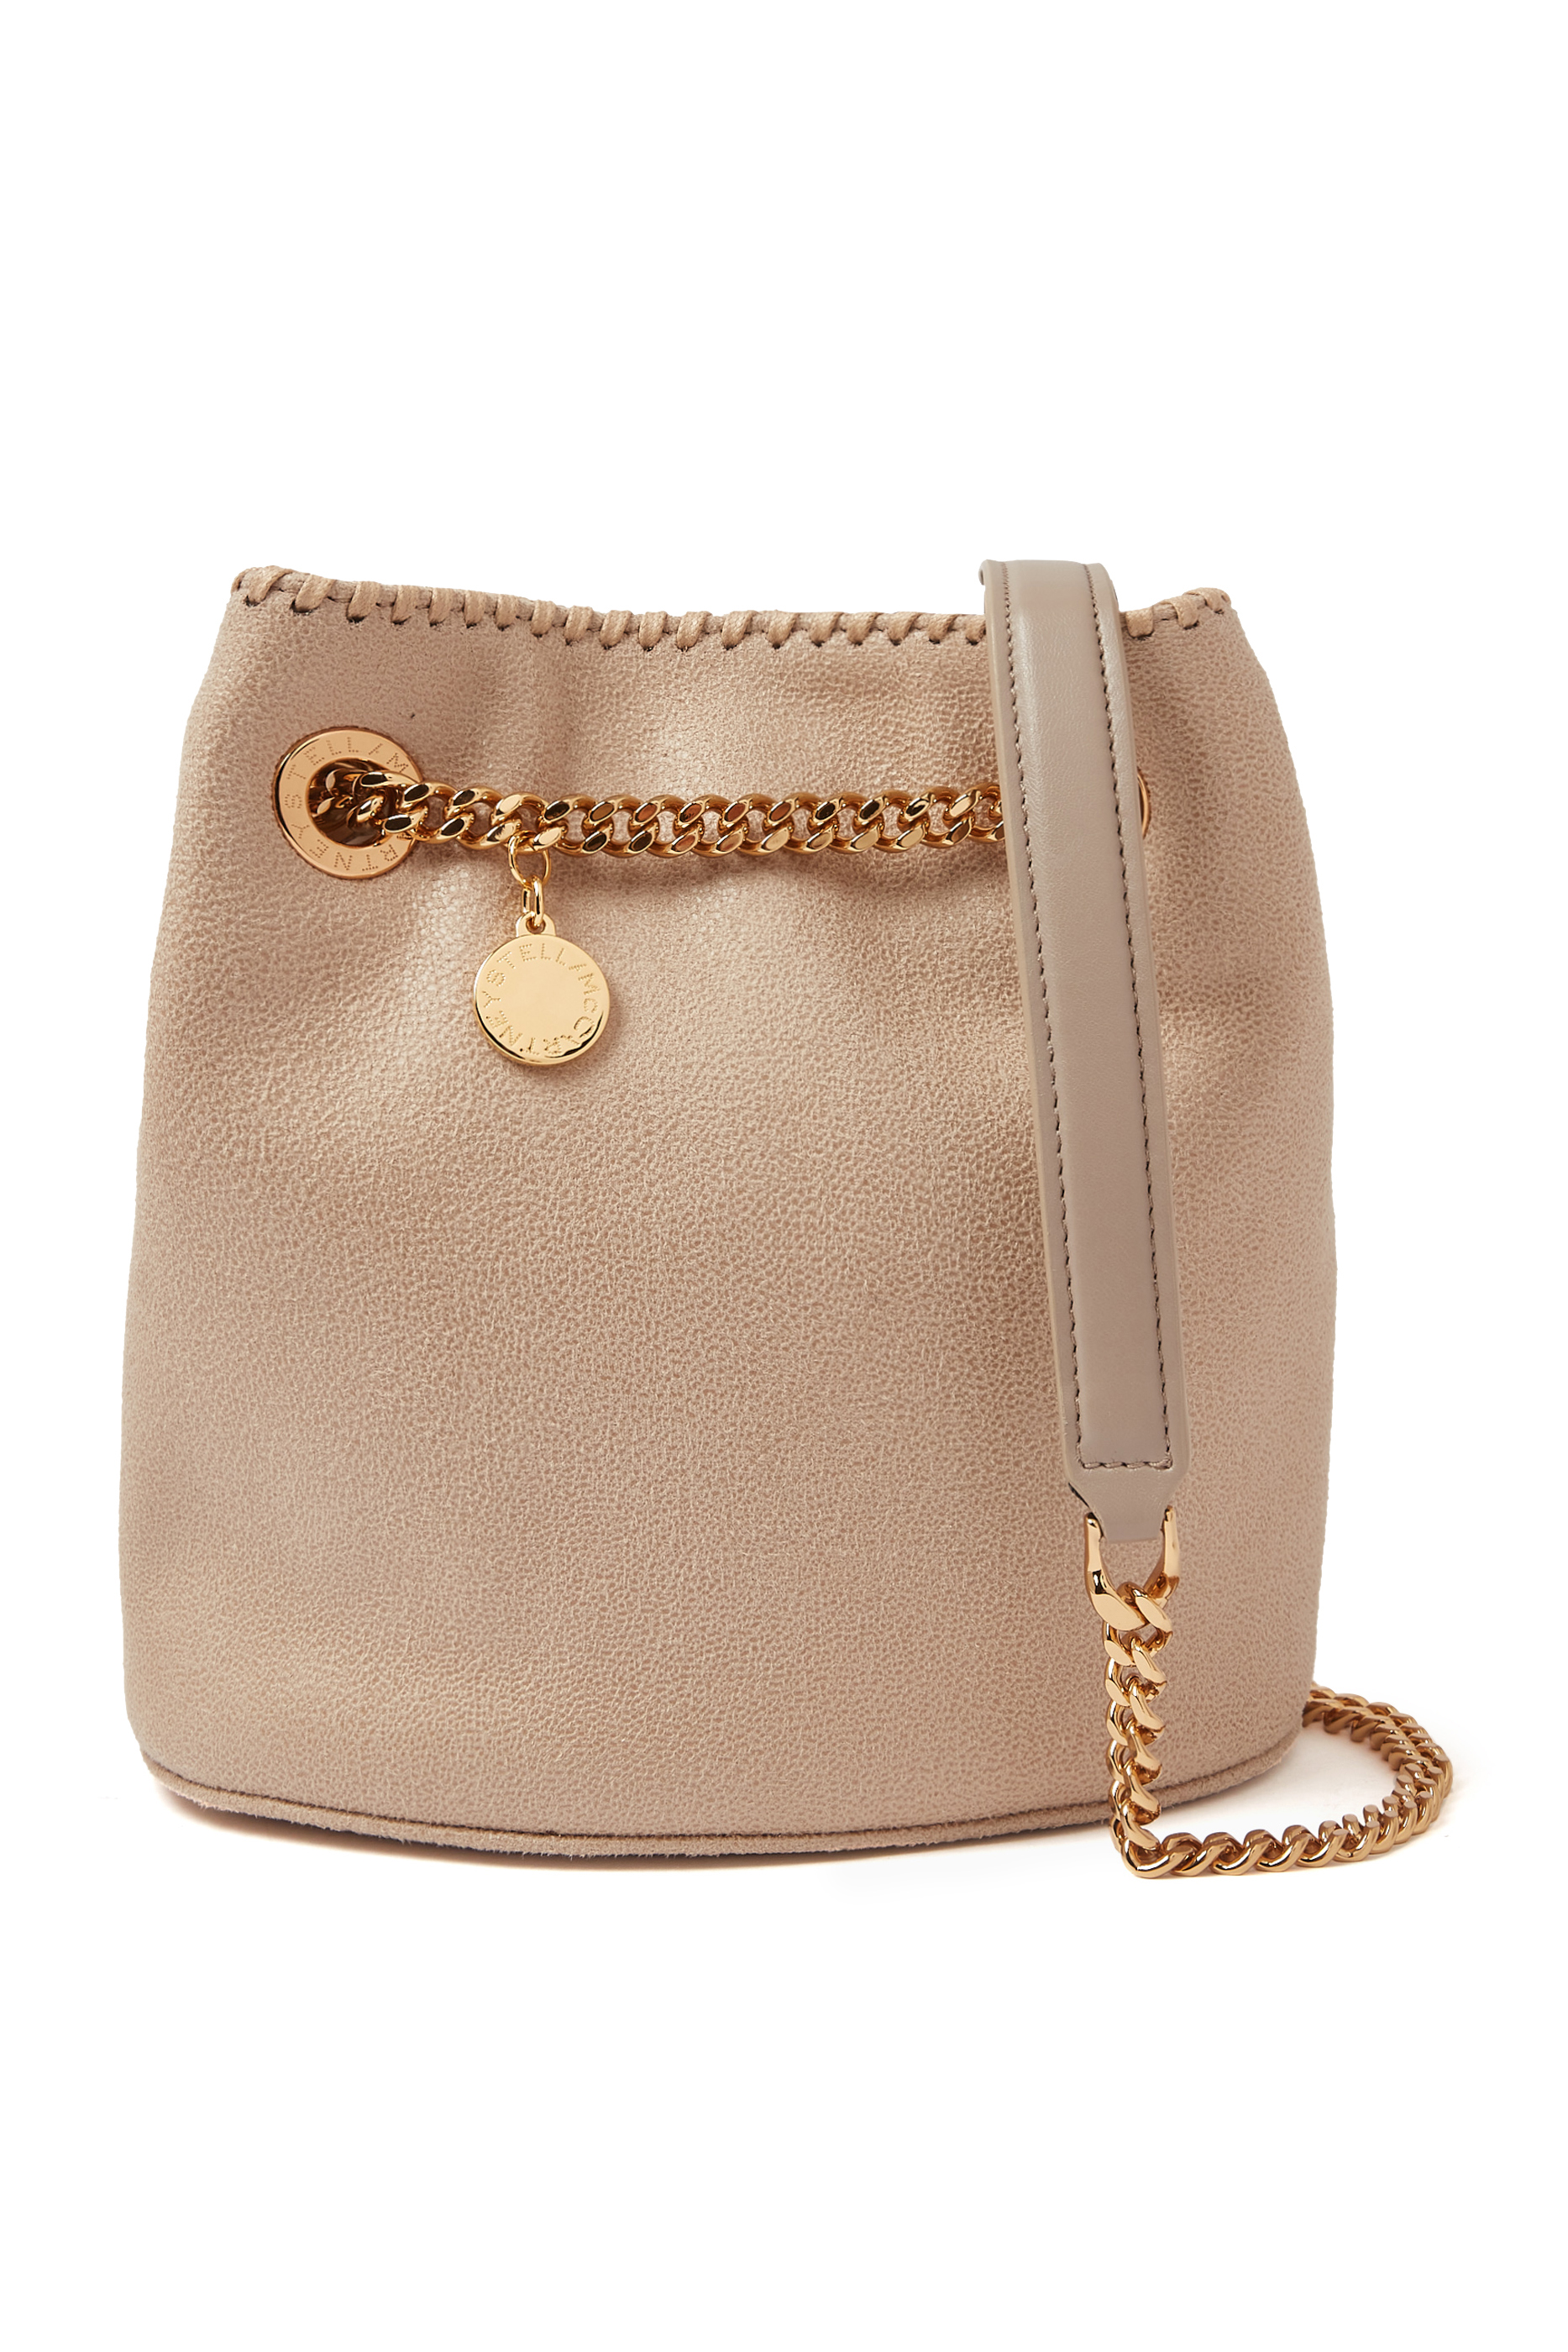 Buy Stella McCartney Bucket Bag for Womens | Bloomingdale's UAE